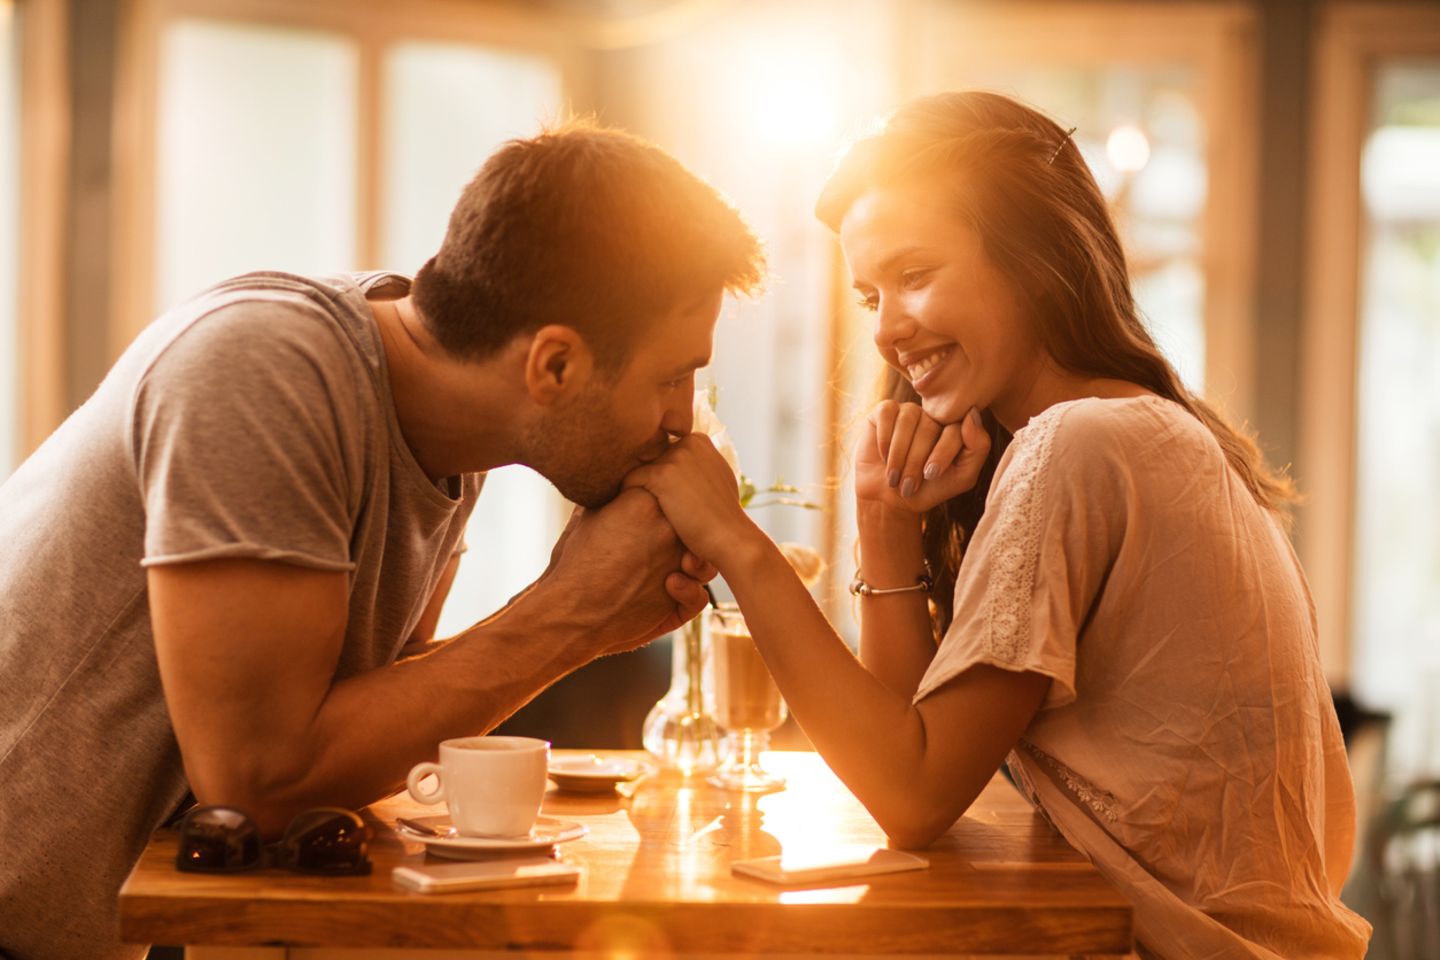 Frauen ab 40: Flirten mit einem jüngeren Mann – kann ich das noch?